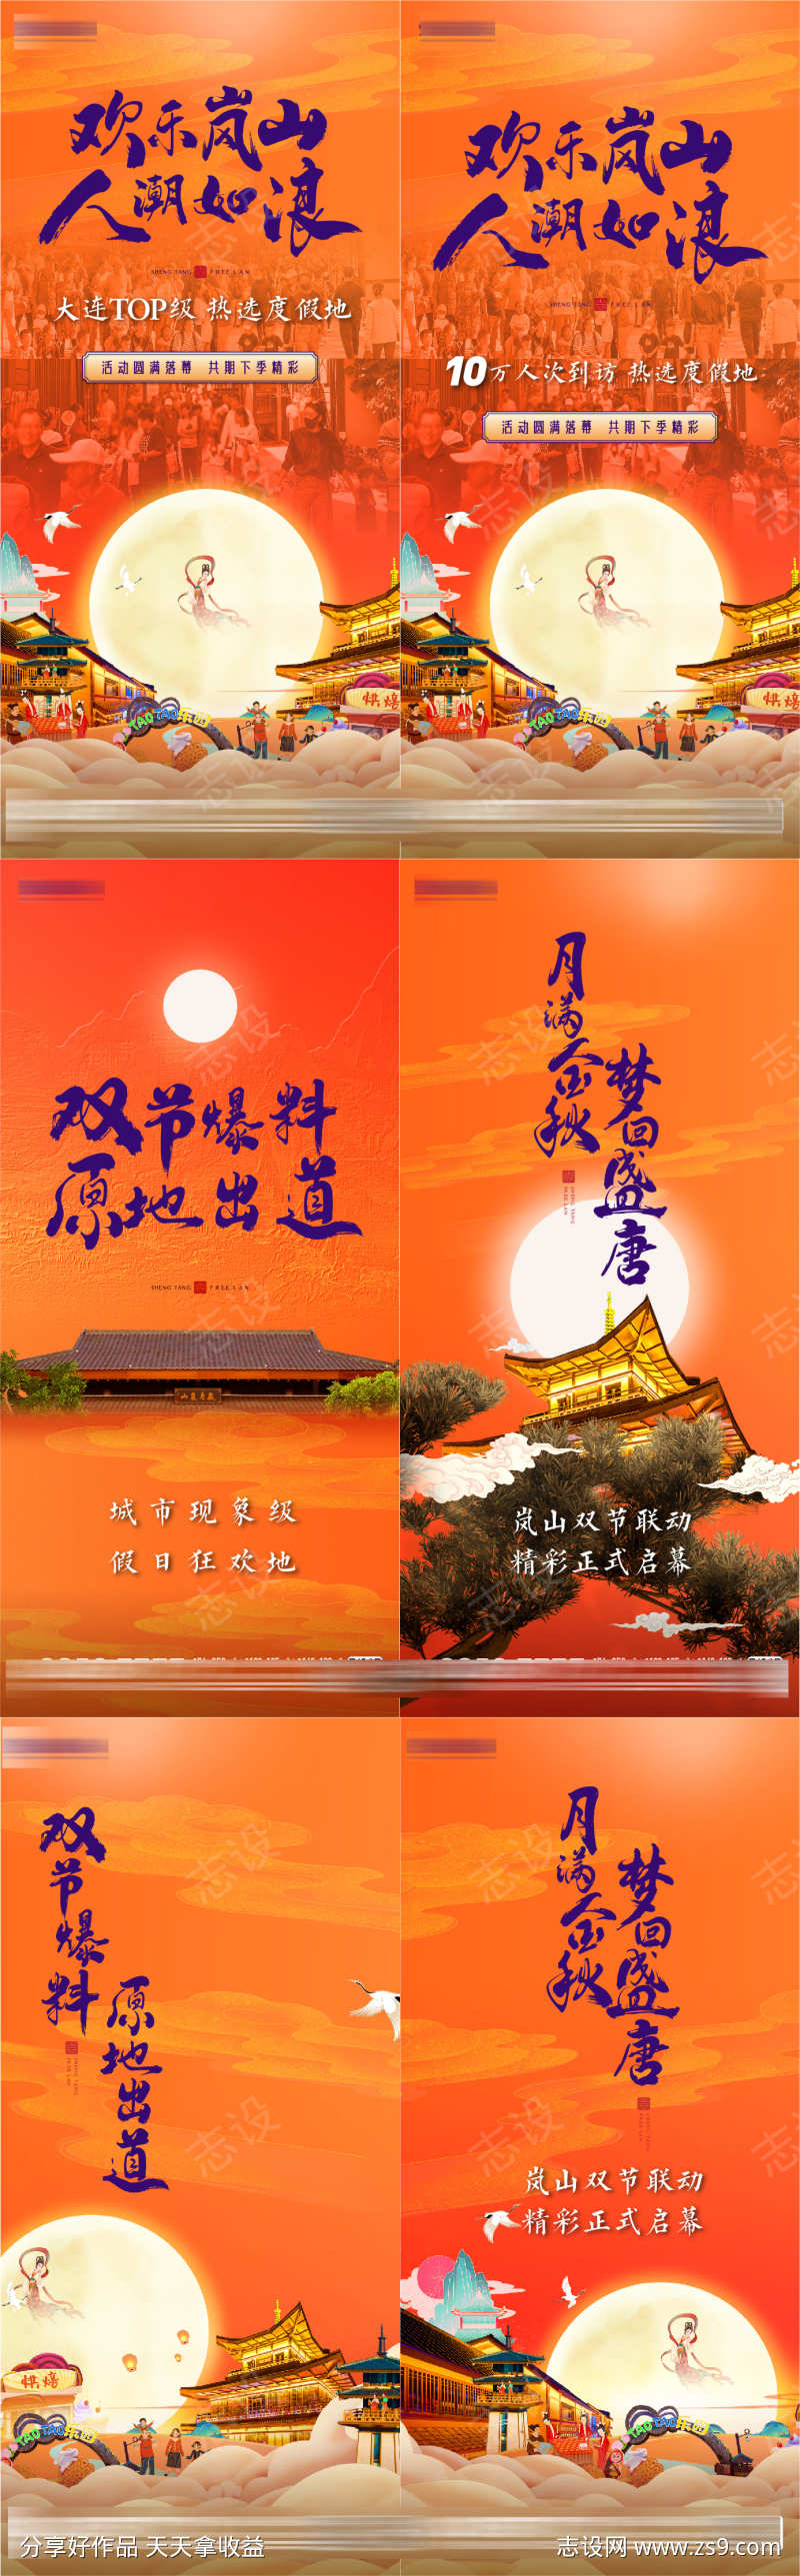 盛唐中秋节国庆节双节联动活动系列海报